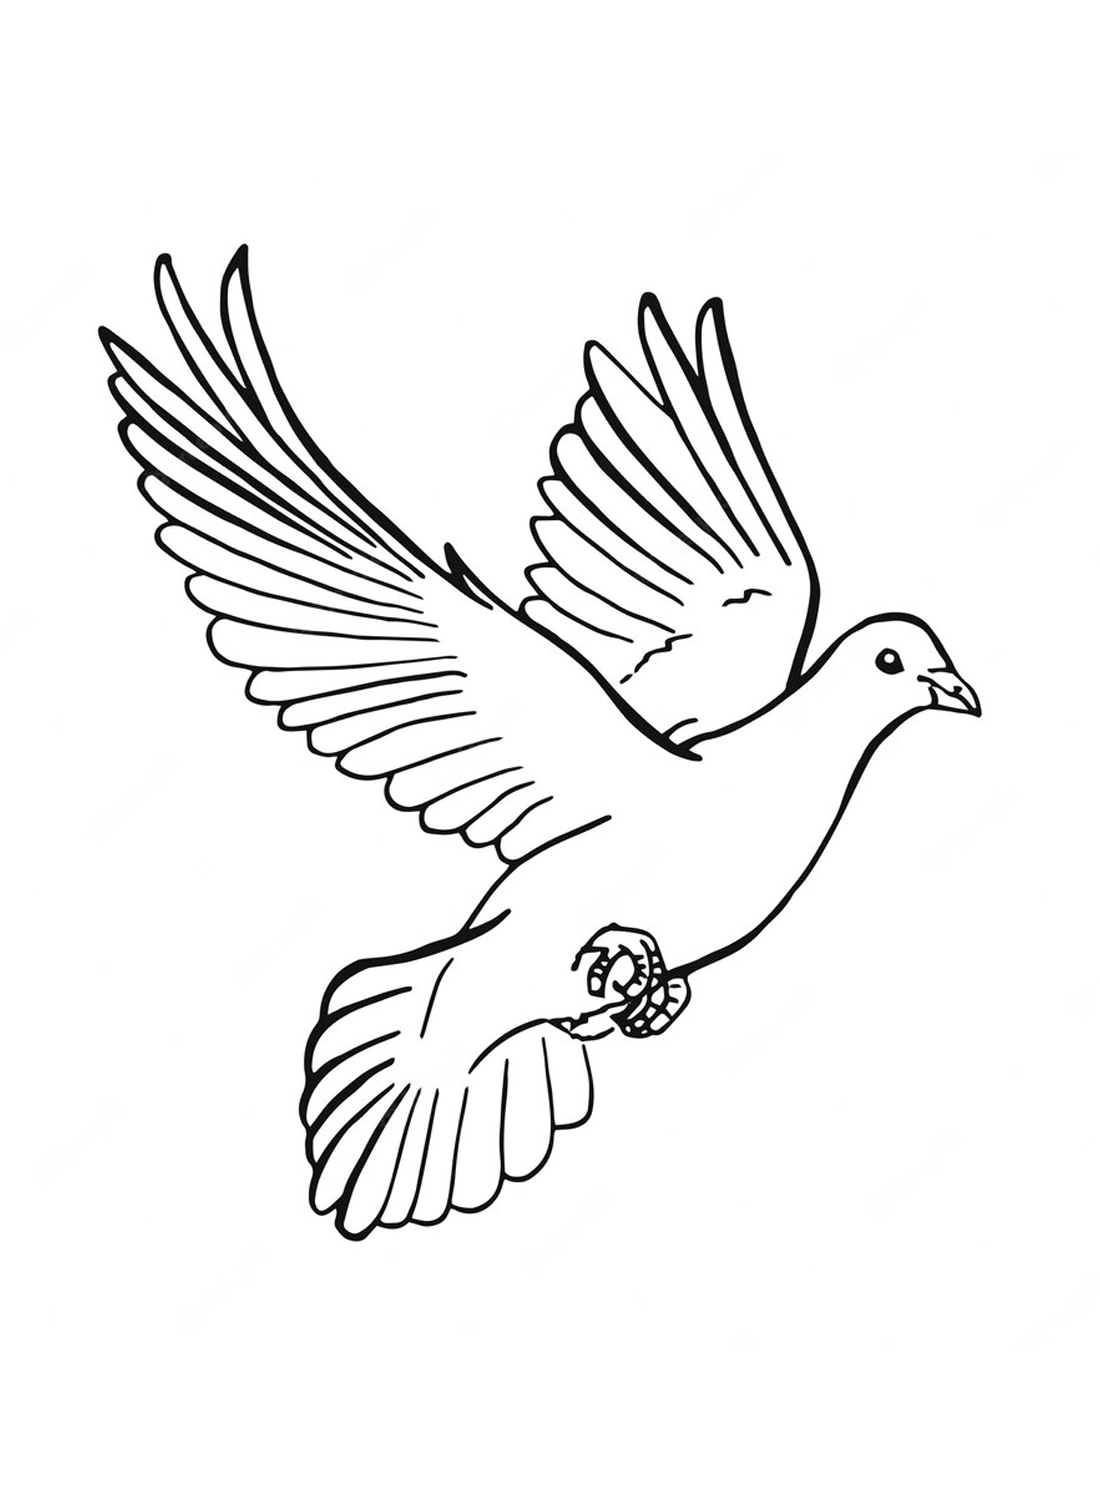 De vliegende duif van Doves